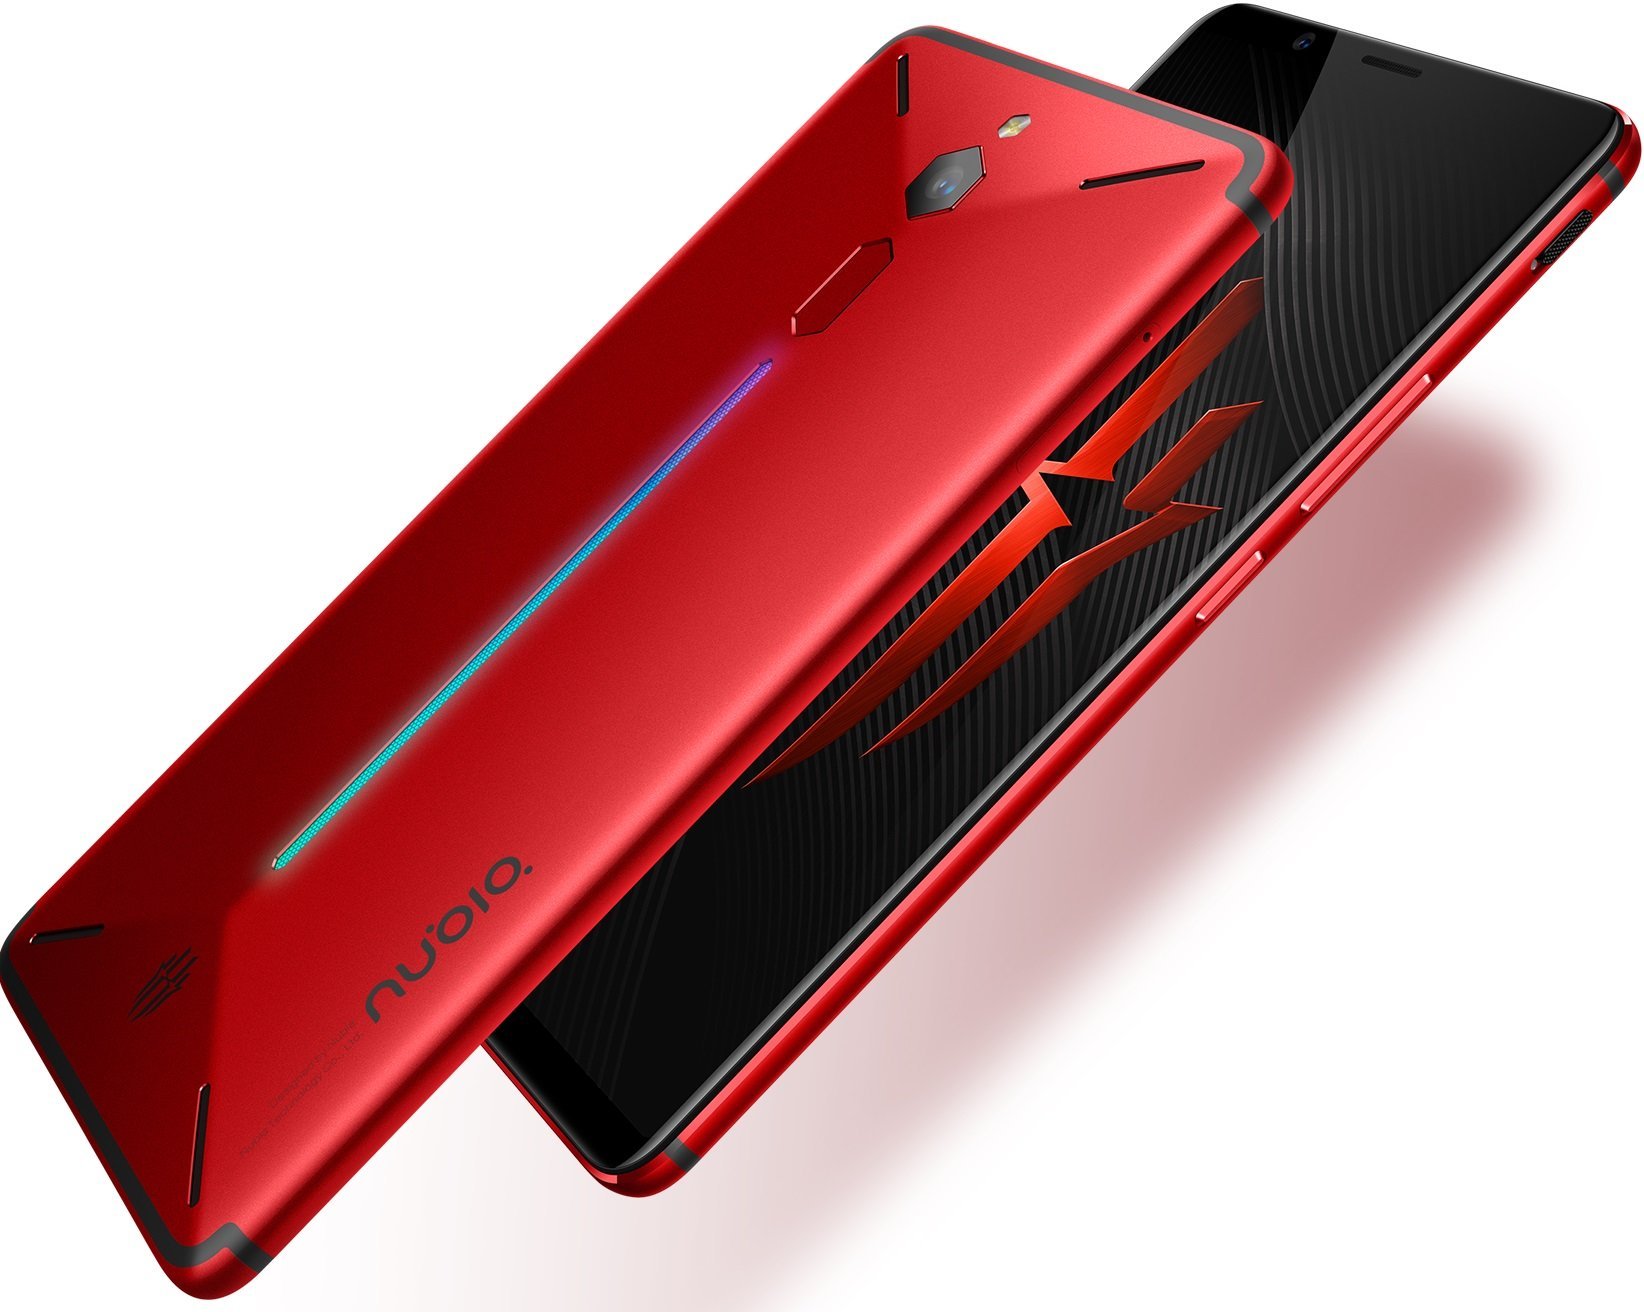 Επίσημο το Red Magic, το gaming smartphone της nubia με τιμή $399